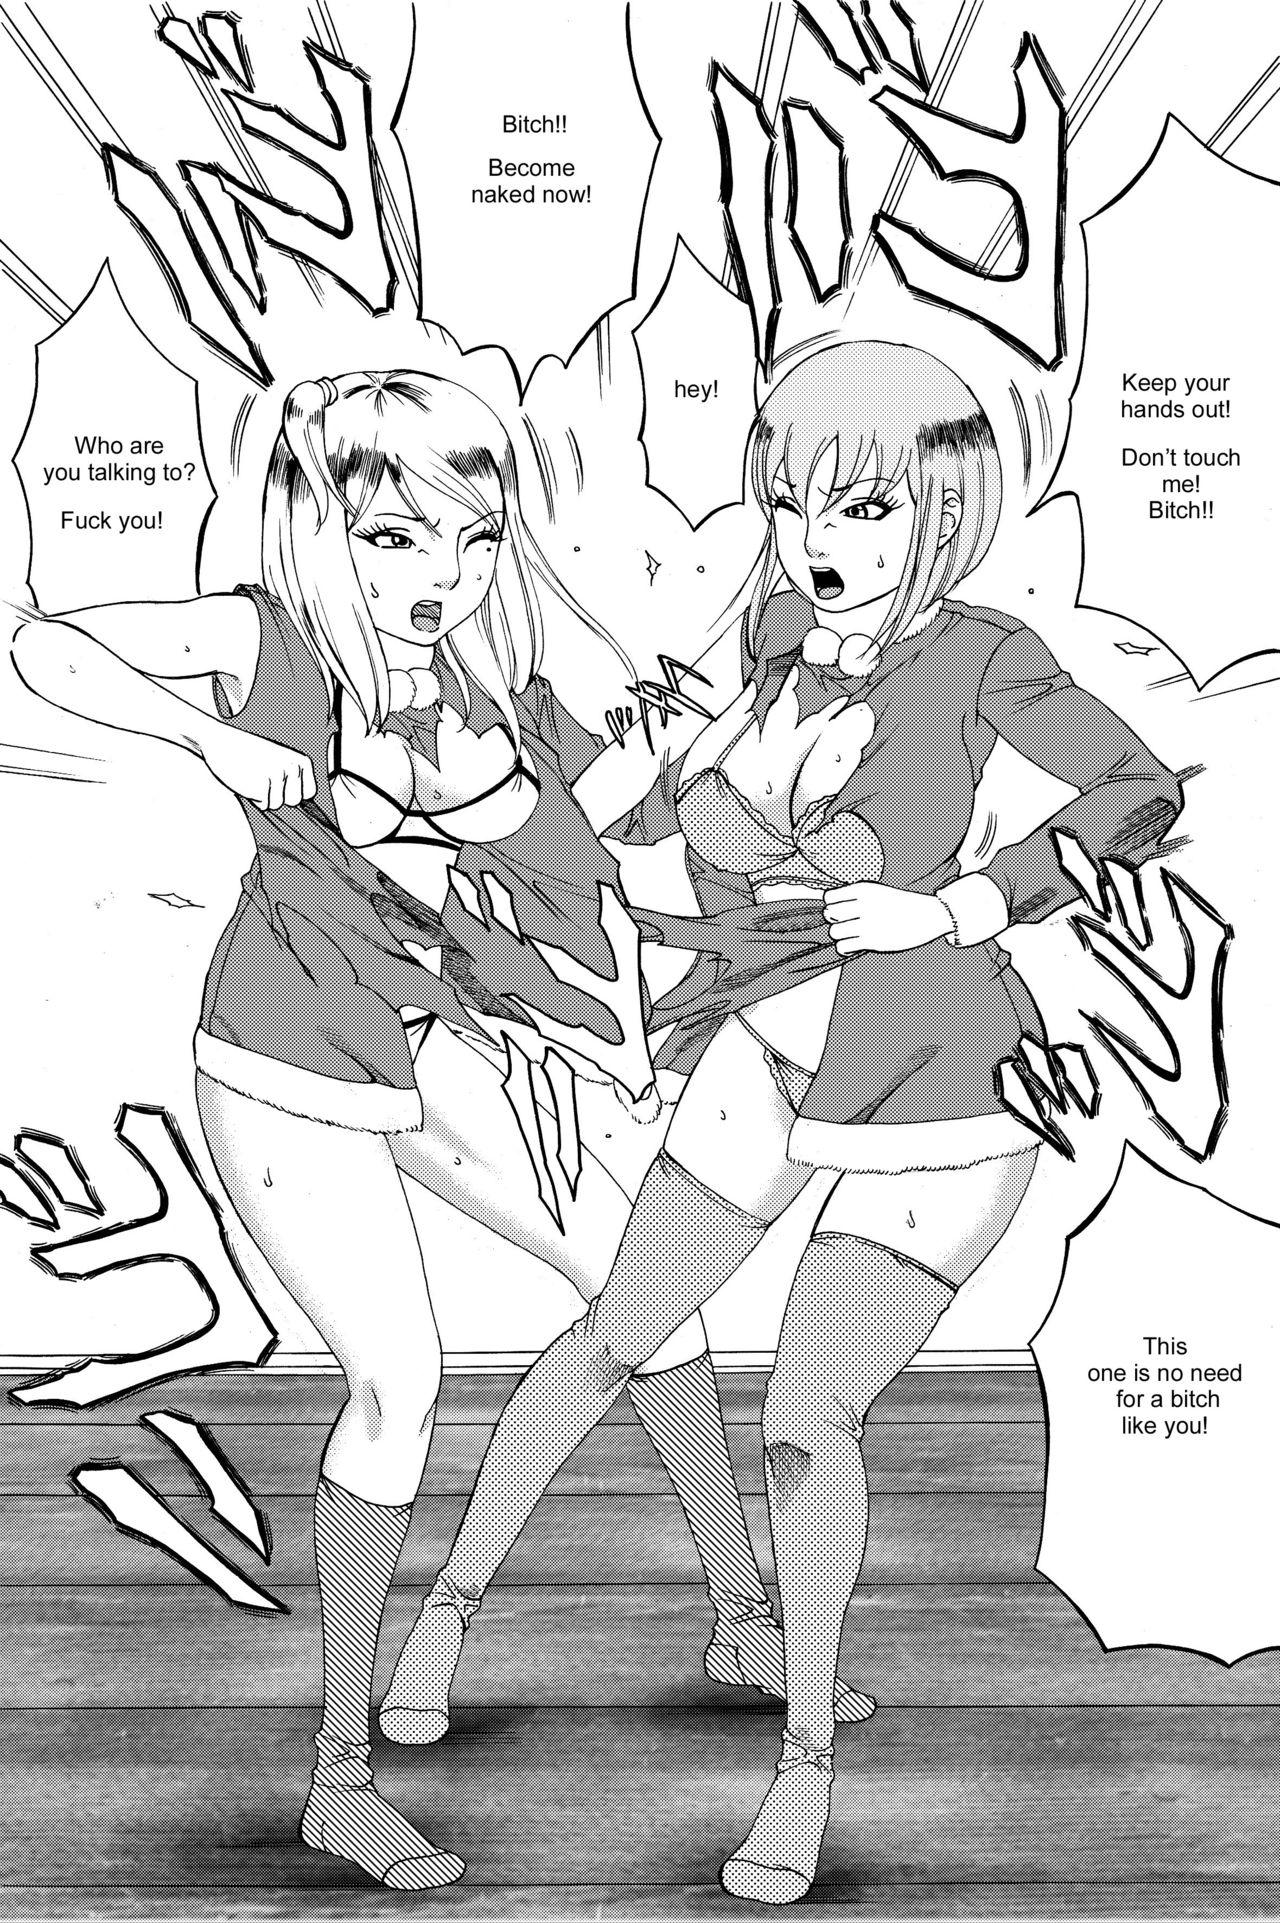 Innocent Fuwapoyo crimson/catfight comic Blowjob Porn - Page 11